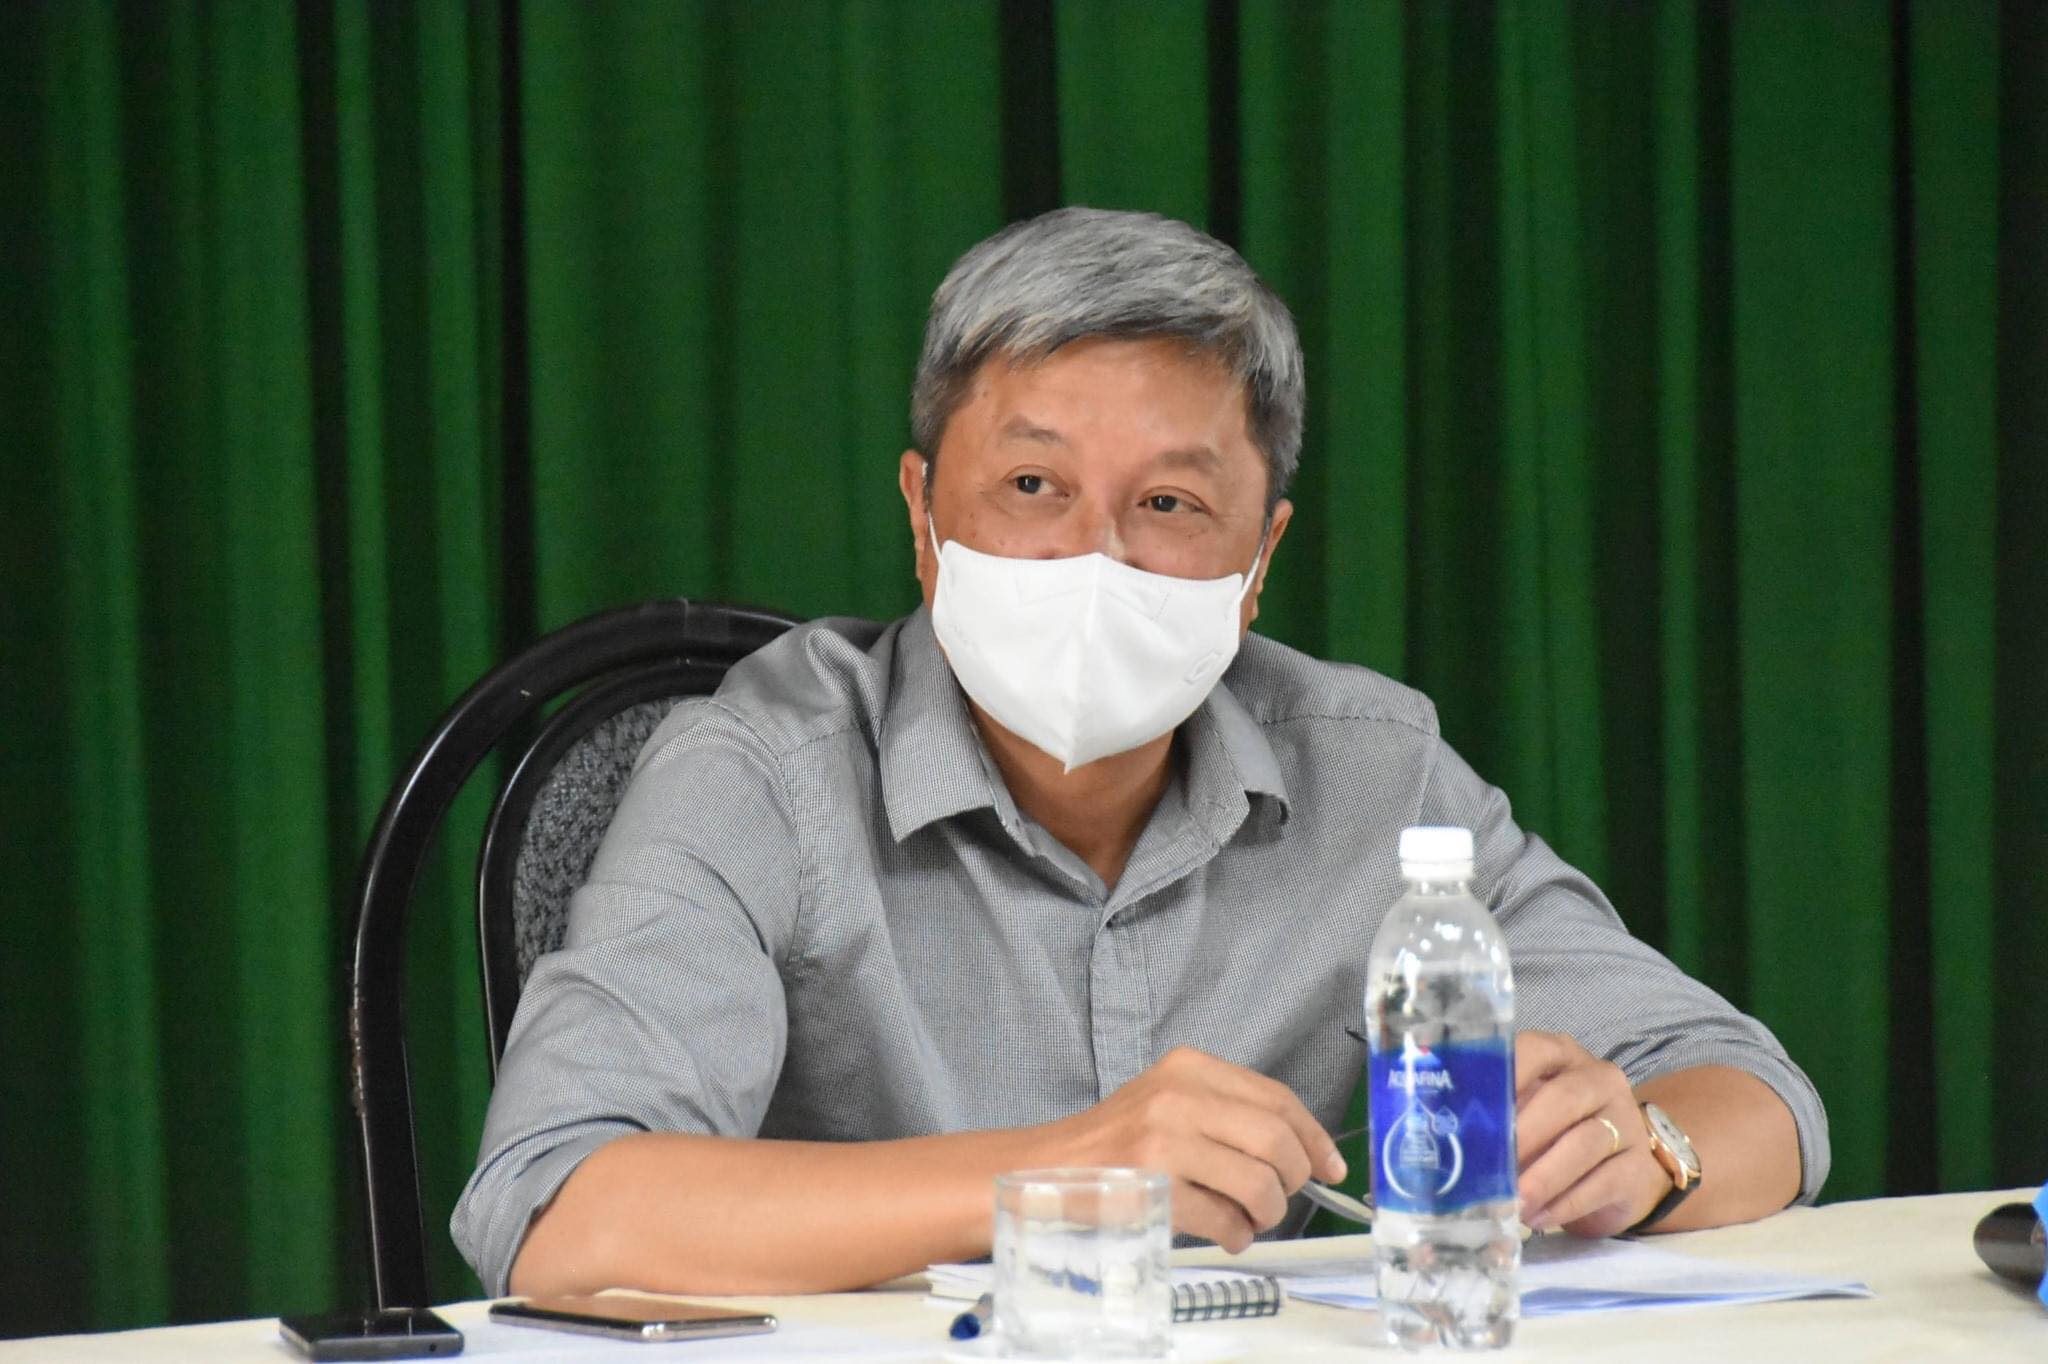 Thứ trưởng Bộ Y tế Nguyễn Trường Sơn.